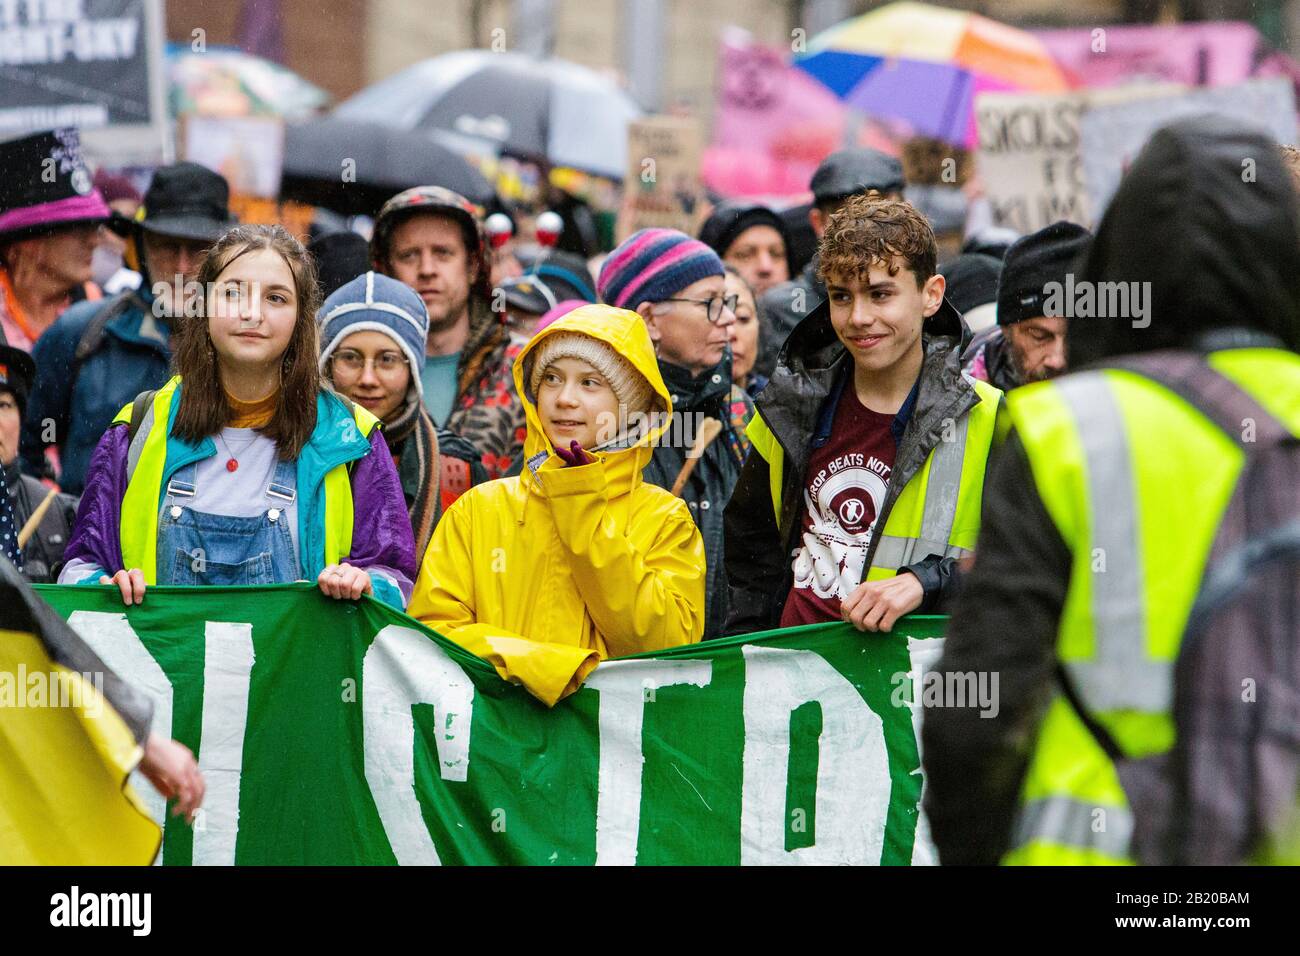 Bristol, Royaume-Uni, 28 février 2020. La militante mondiale du climat Greta Thunberg est représentée lorsqu'elle rejoint des étudiants et des enfants d'école du Royaume-Uni dans une manifestation de jeunesse 4 Climate Protest march dans le centre de Bristol. Son apparition à l'événement a attiré des milliers de personnes de la ville de partout au Royaume-Uni avec de nombreux voyages sur de grandes distances pour juste voir un aperçu de Greta et entendre son discours. Crédit: Lynchpics/Alay Live News Banque D'Images